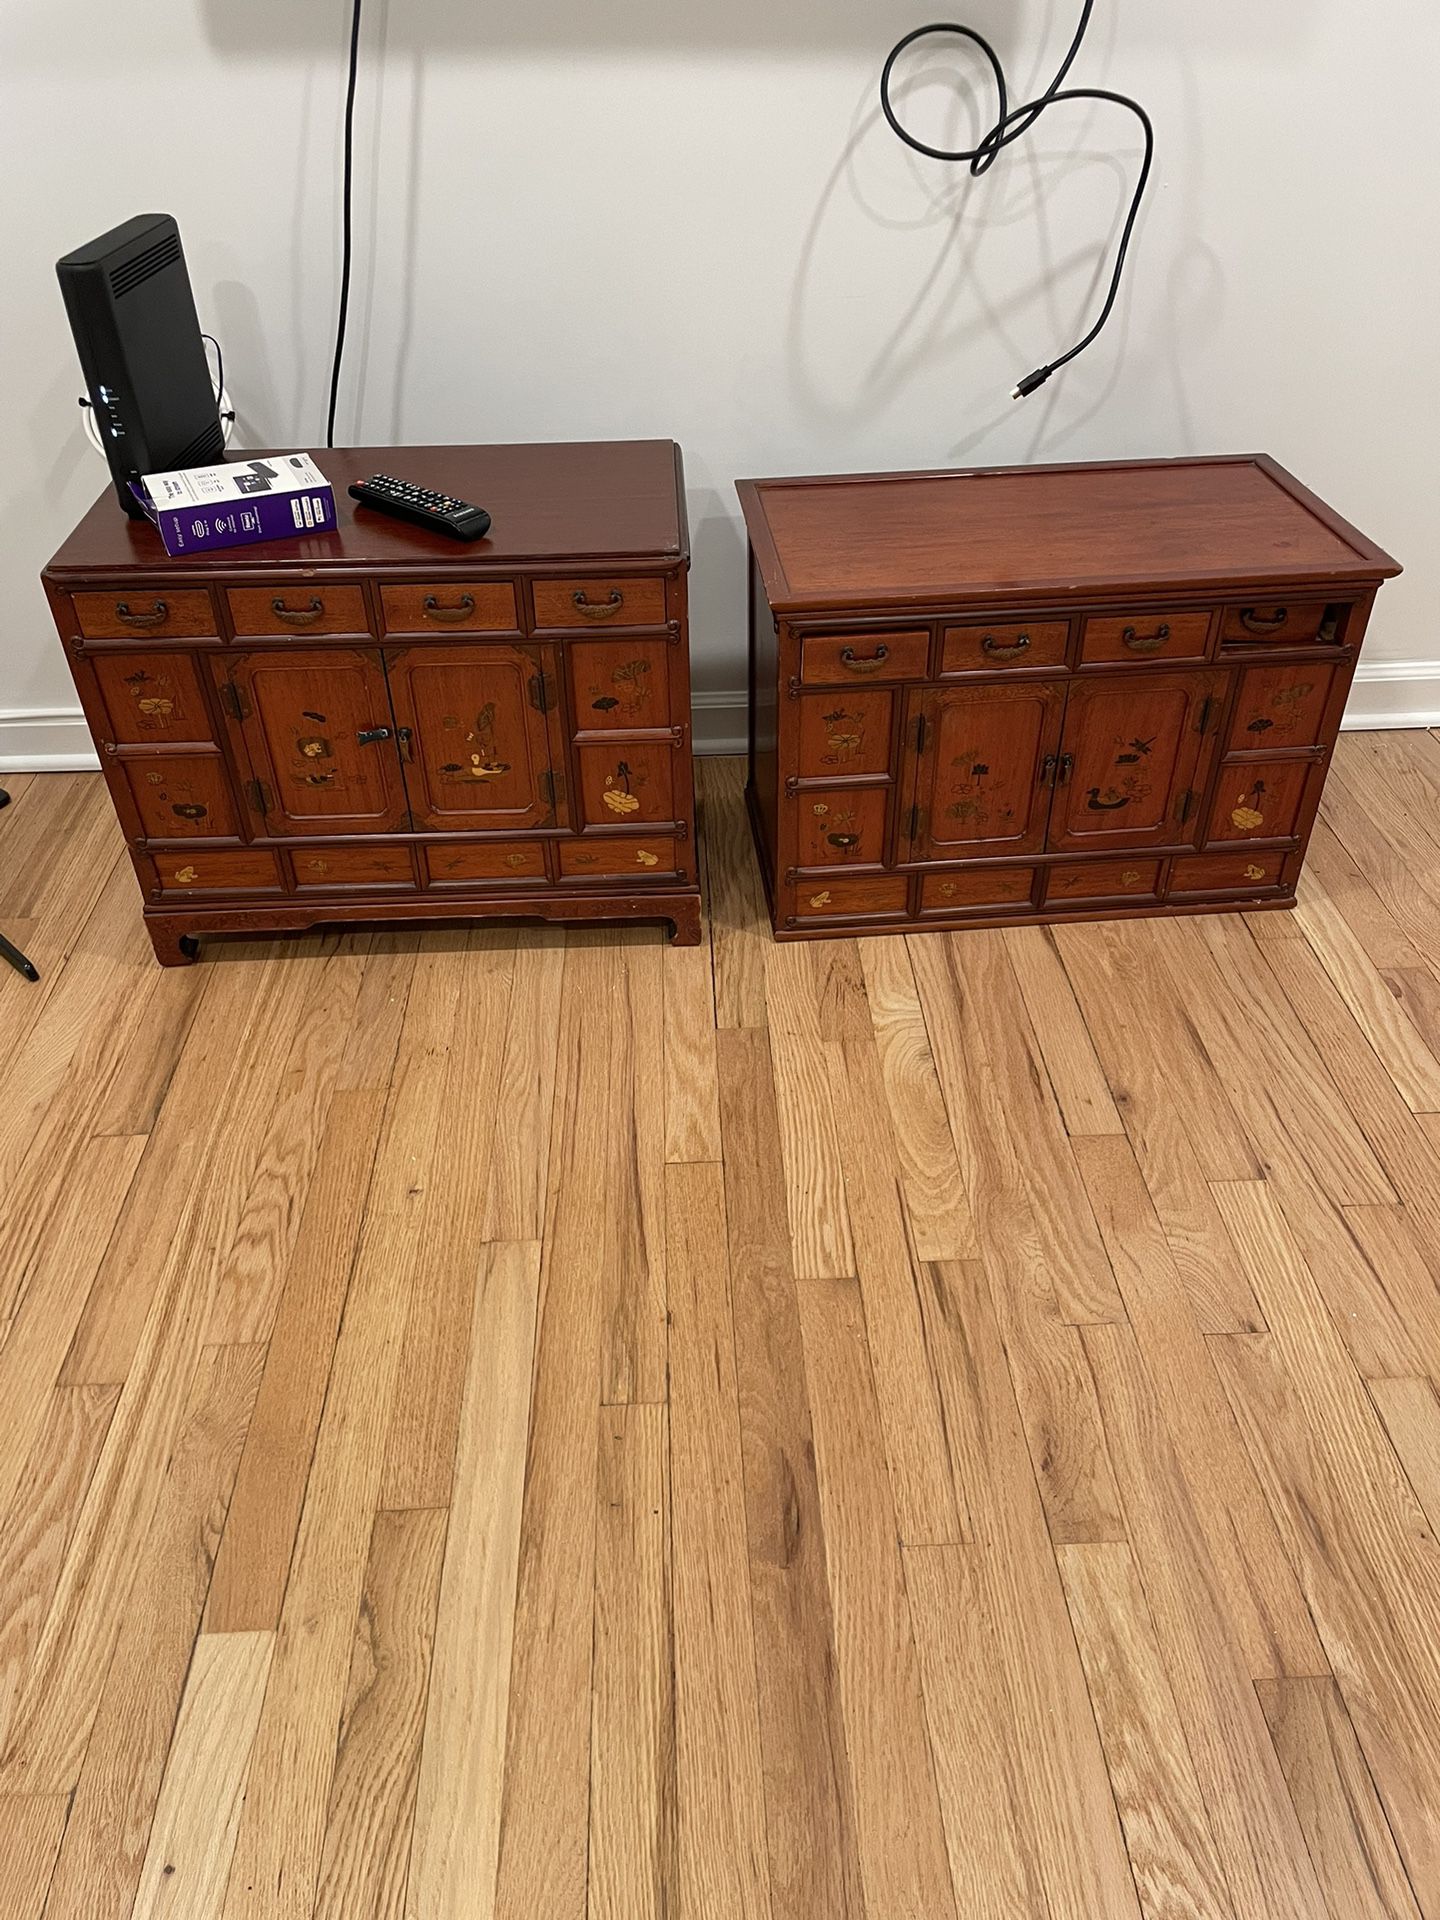 Wooden Storage Cabinets 